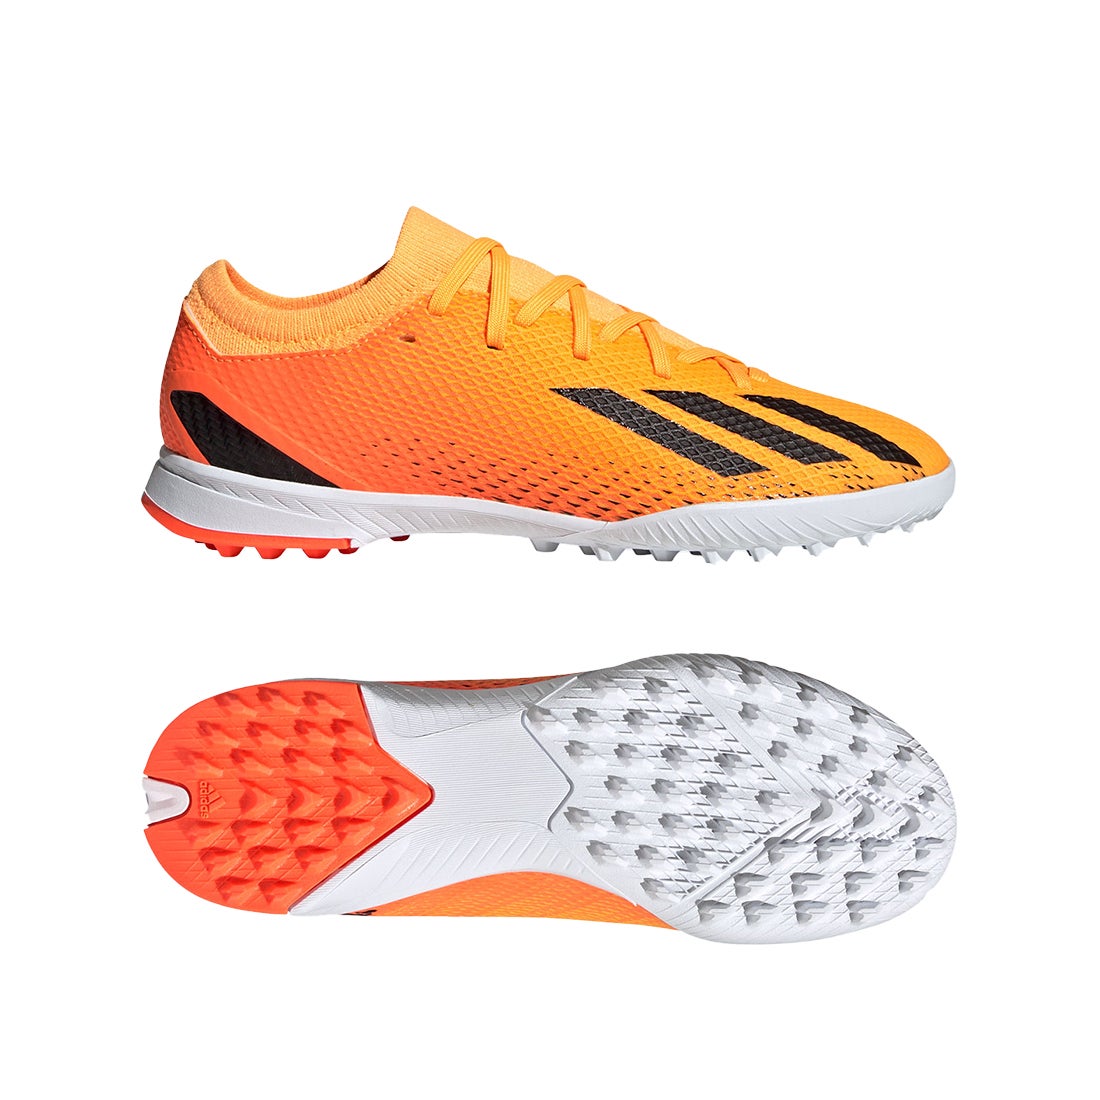 adidas アディダス エックススピードポータル.3 TF ジュニア(オレンジ×ブラック) LSE12 GZ2467 サッカー スパイク・シューズ  -サッカーショップ【SWS】